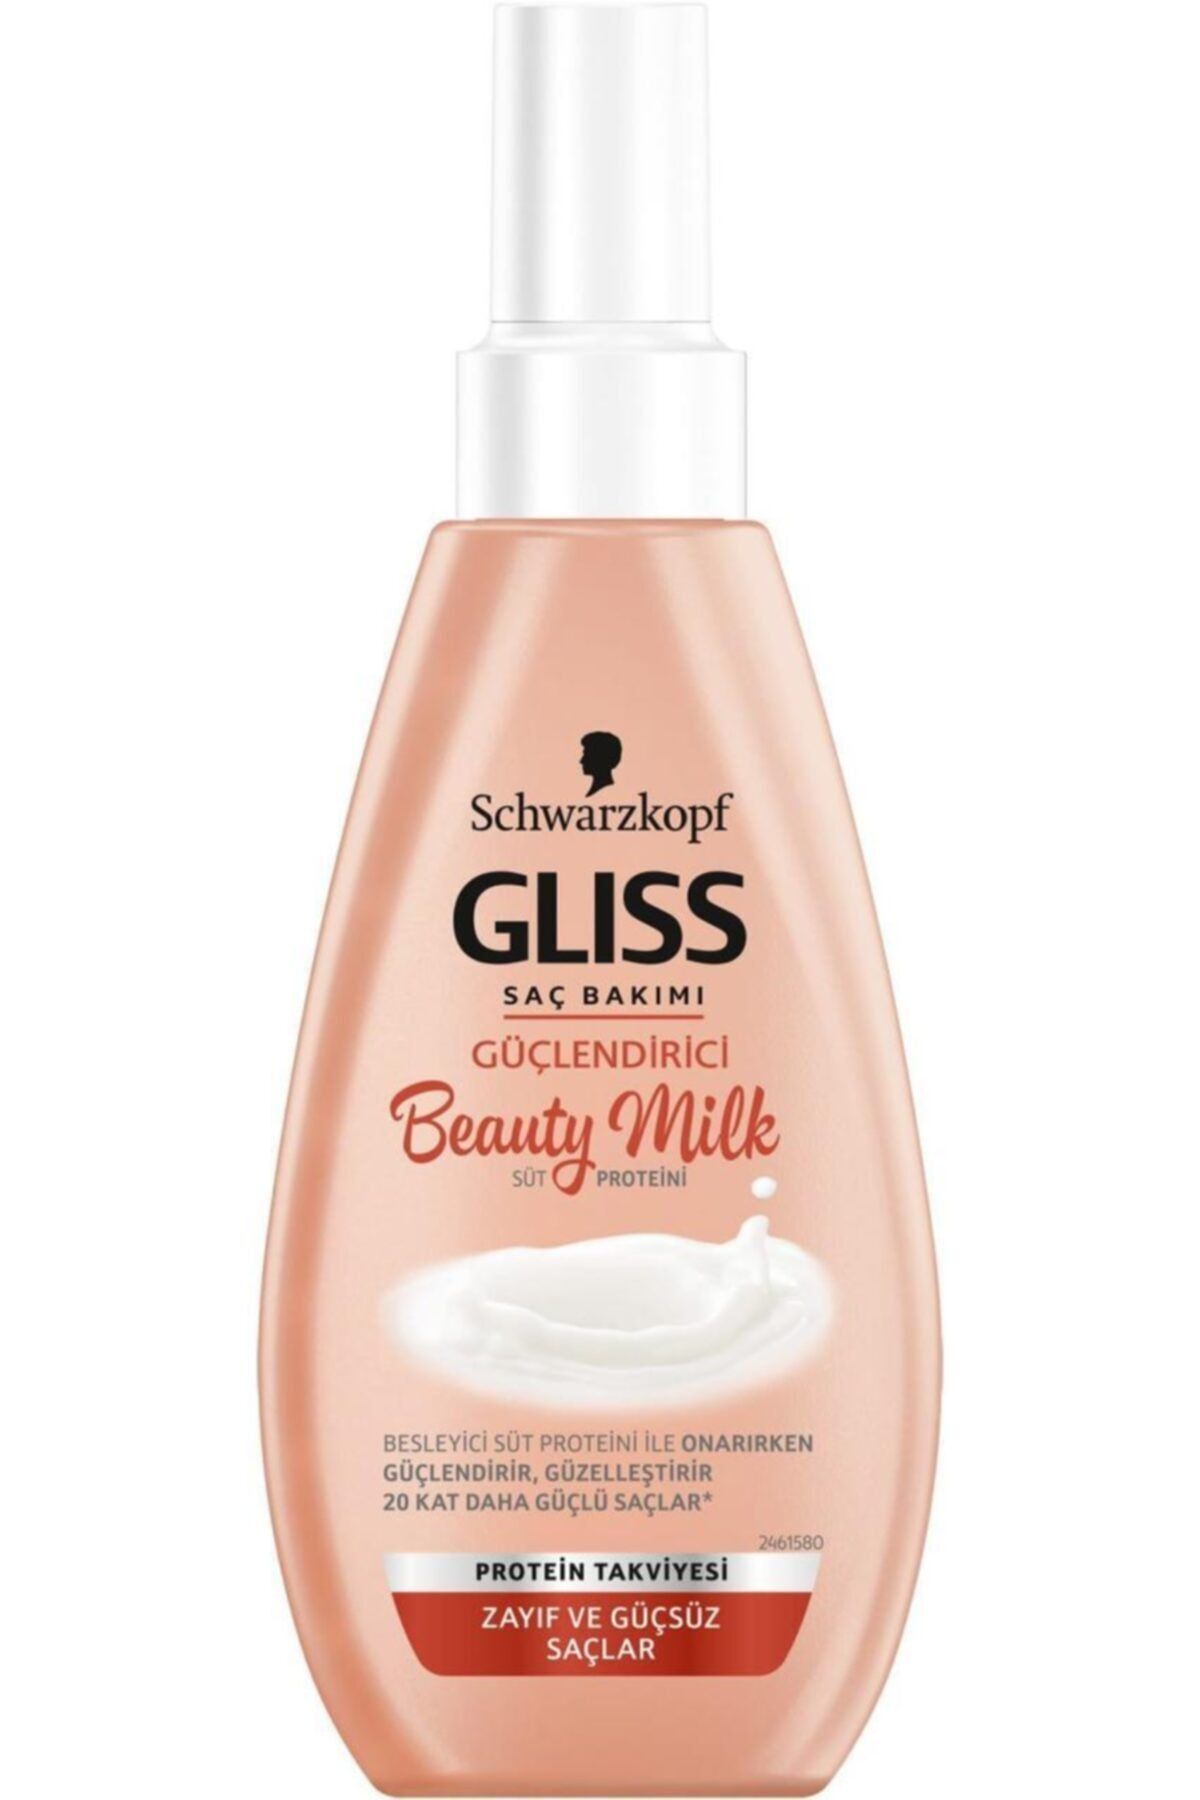 Schwarzkopf Gliss Güçlendirici Saç Bakım - Beauty Milk 150 ml 4015100295849